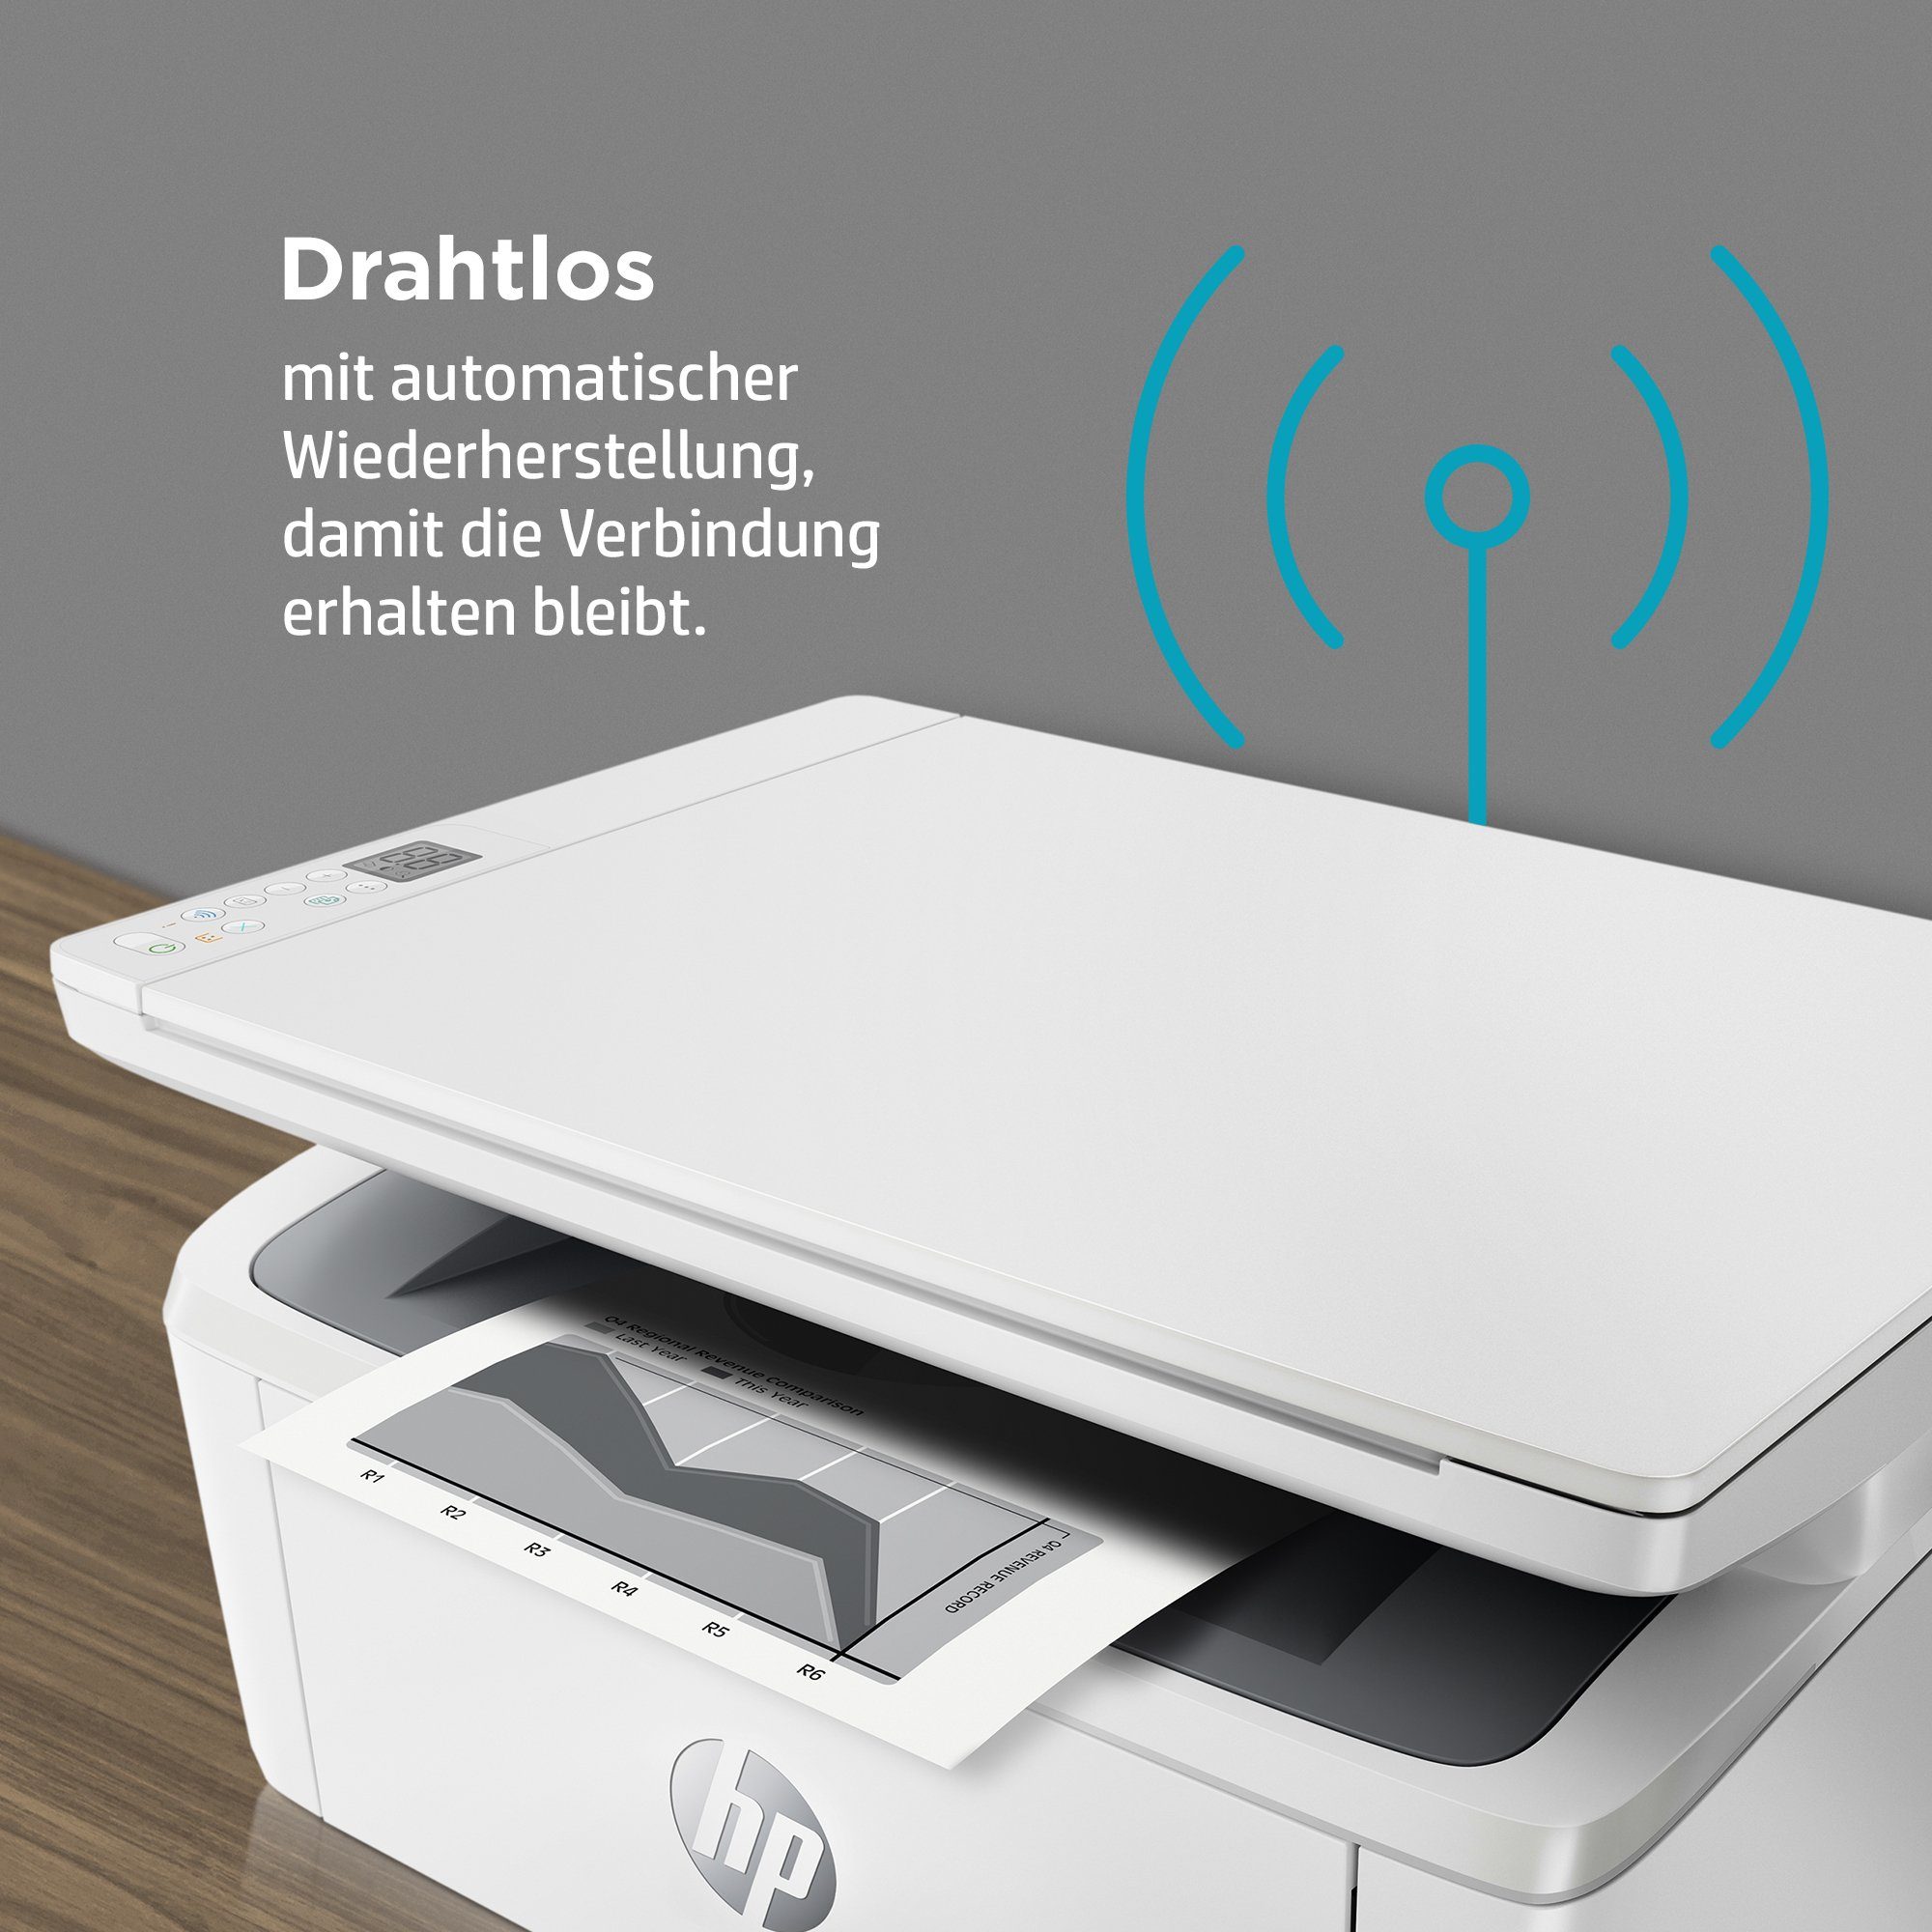 HP LaserJet MFP M140w (Bluetooth, Instant WLAN Ink Multifunktionsdrucker, kompatibel) HP+ Drucker (Wi-Fi)